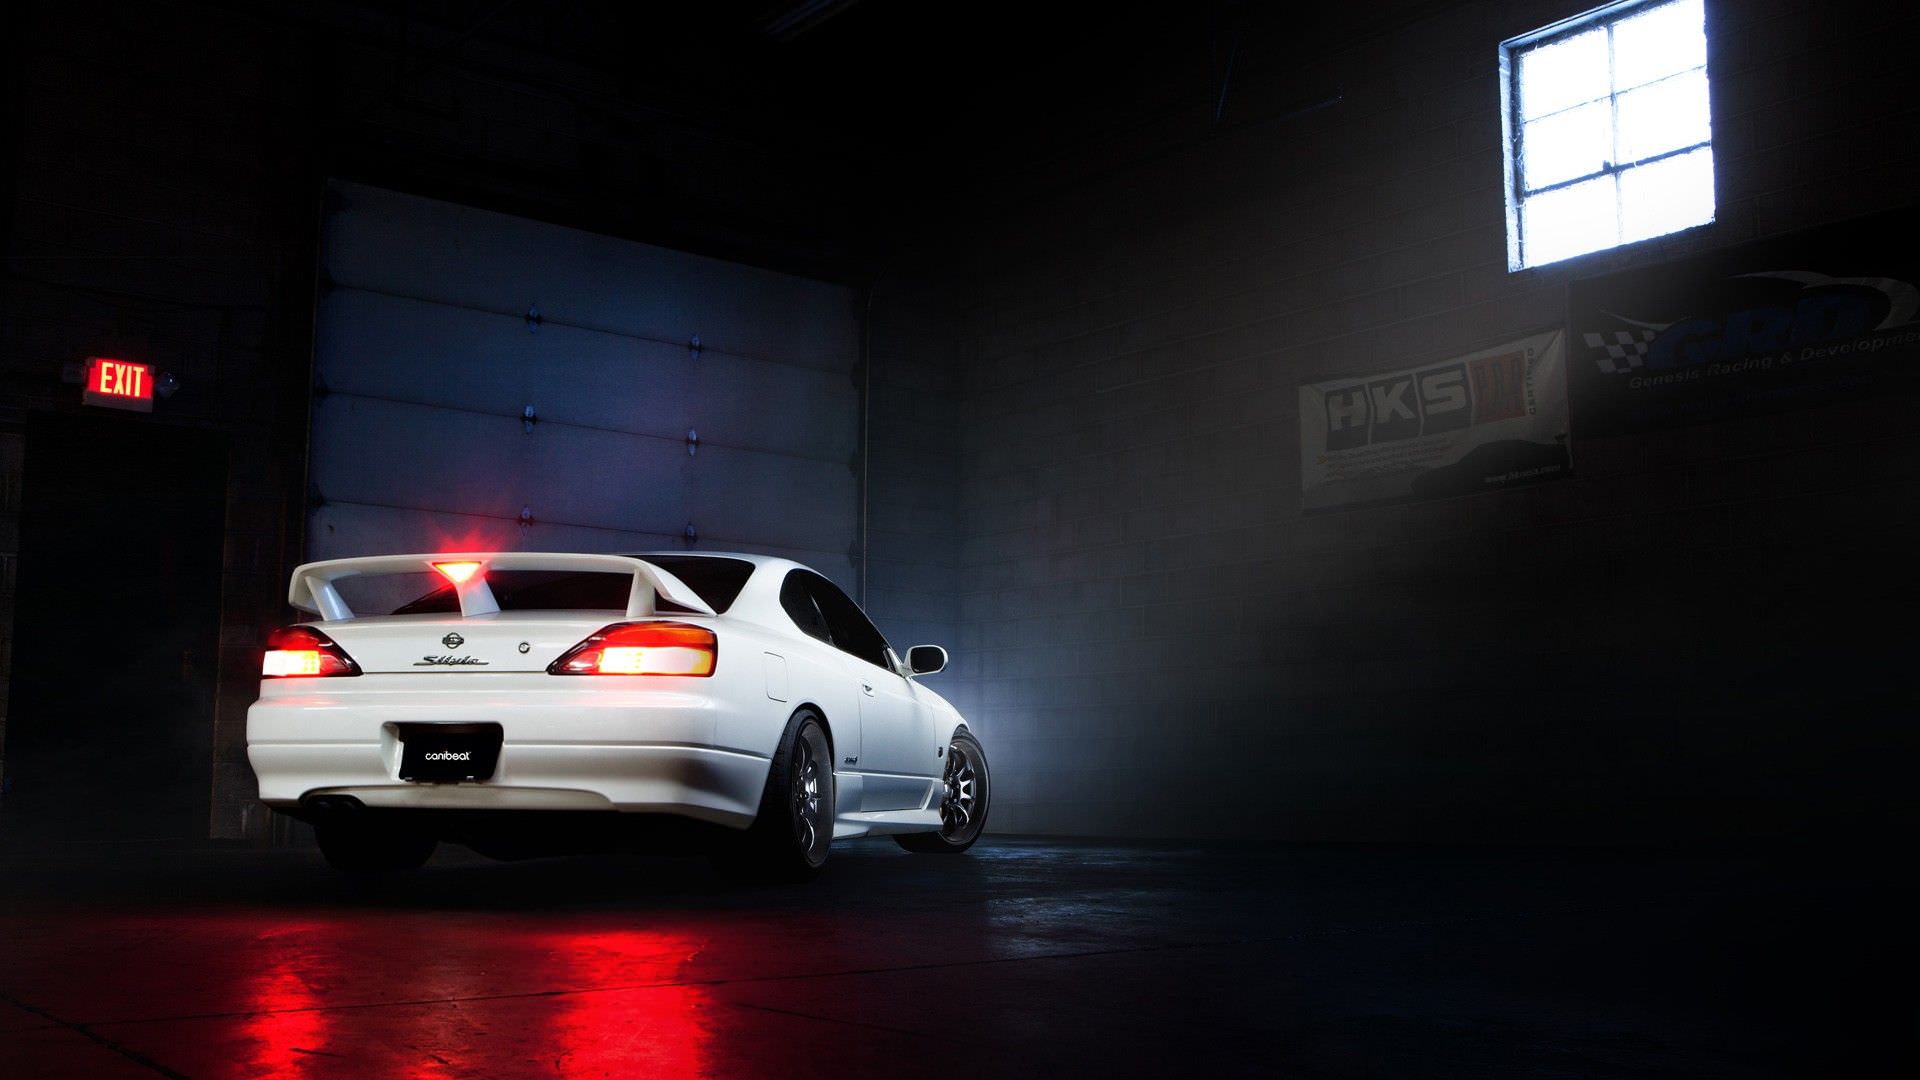 Download Nissan Silvia S15 4K 5K 8K Backgrounds For Desktop And Mobile  Wallpaper 